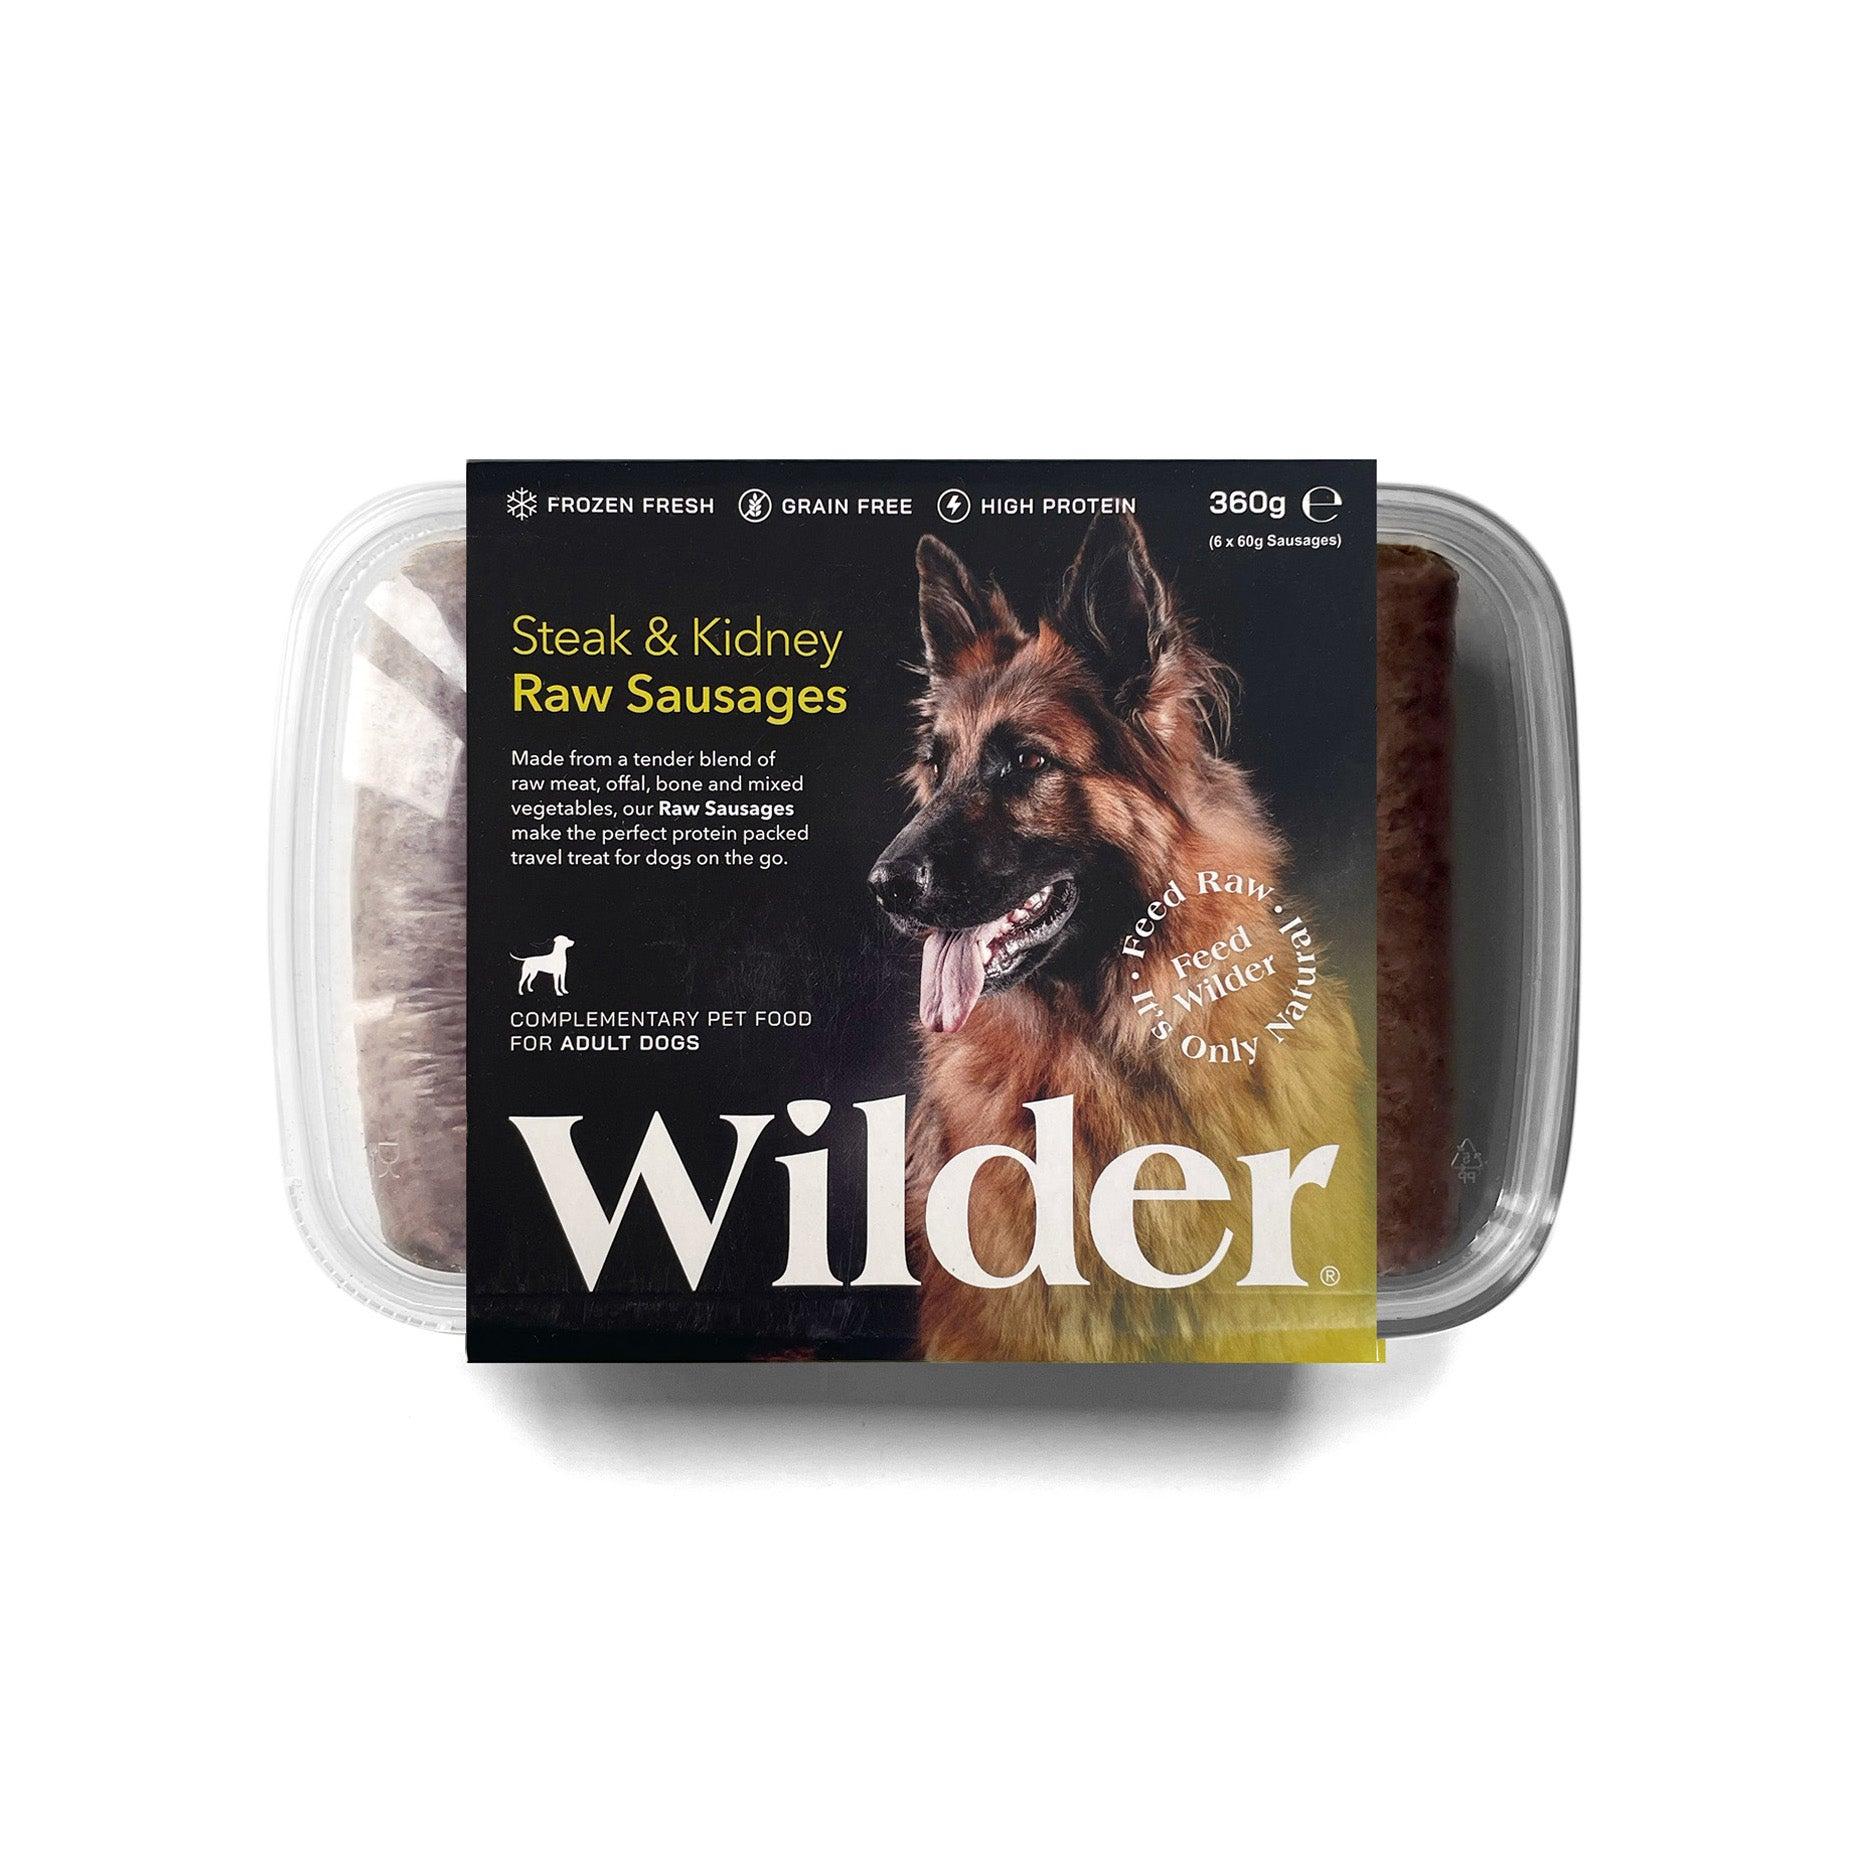 Wilder Steak & Kidney Raw Sausages 360g Pack Yellow Label